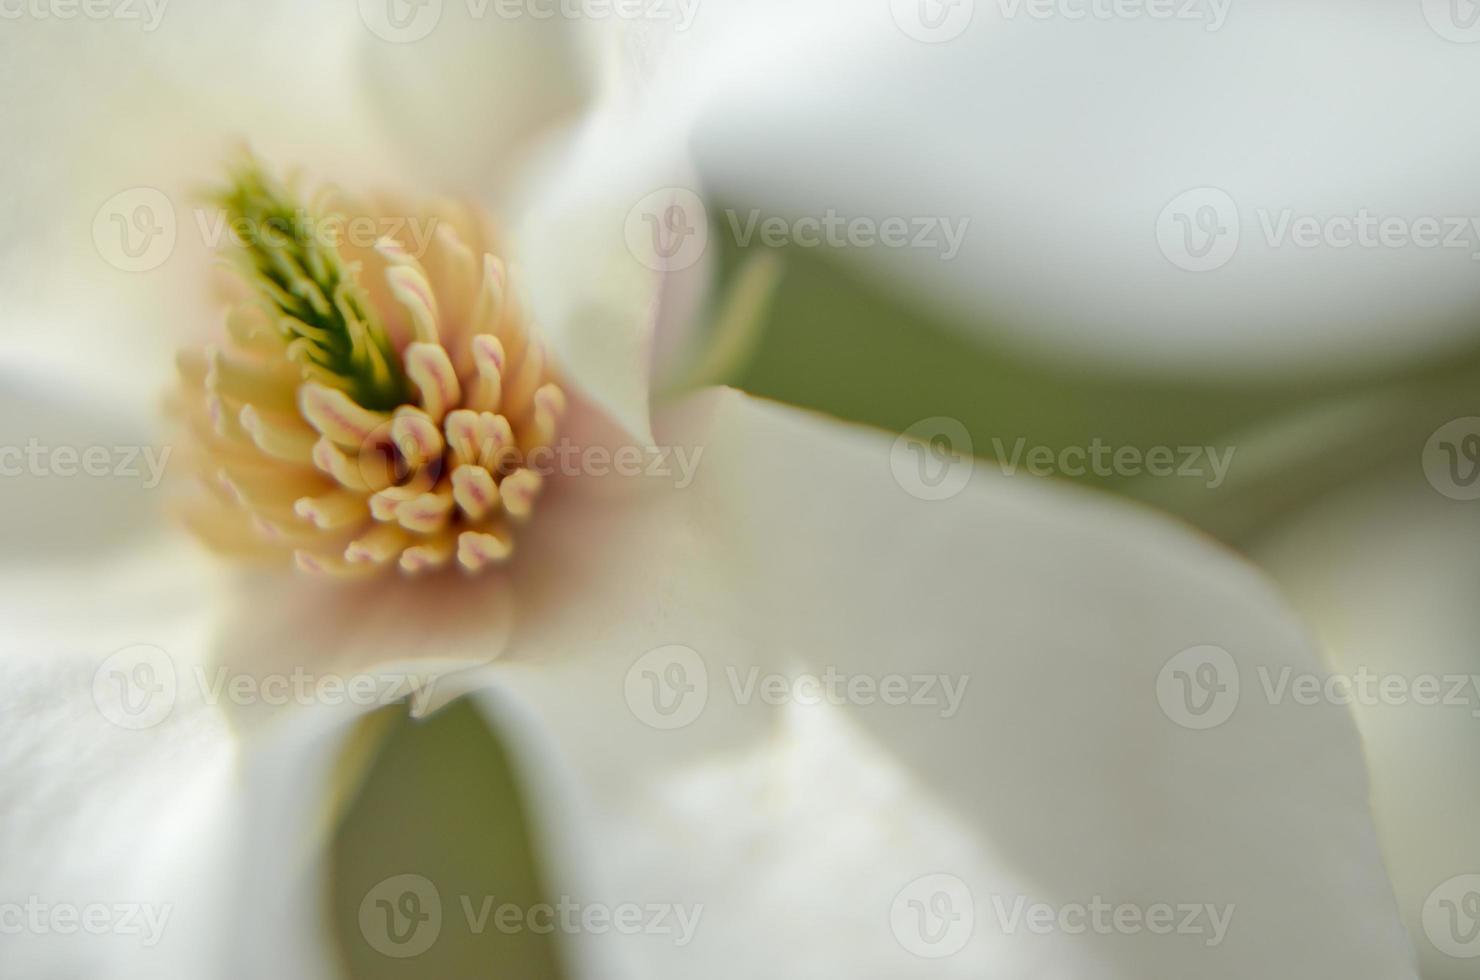 flor de magnolia blanca de cerca foto